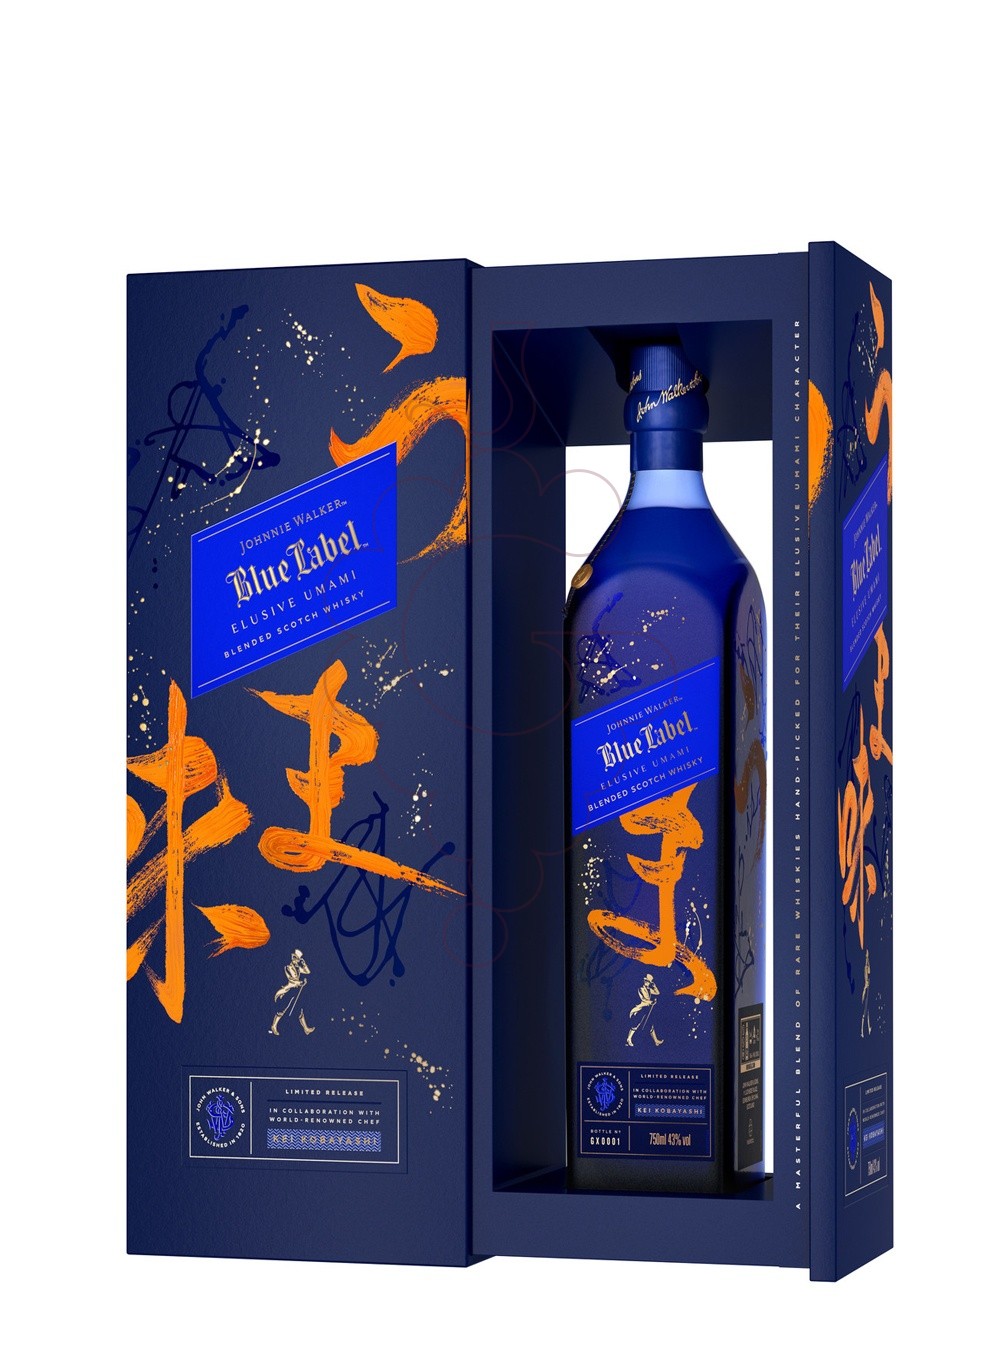 Foto Whisky Johnnie walker blue elusive um